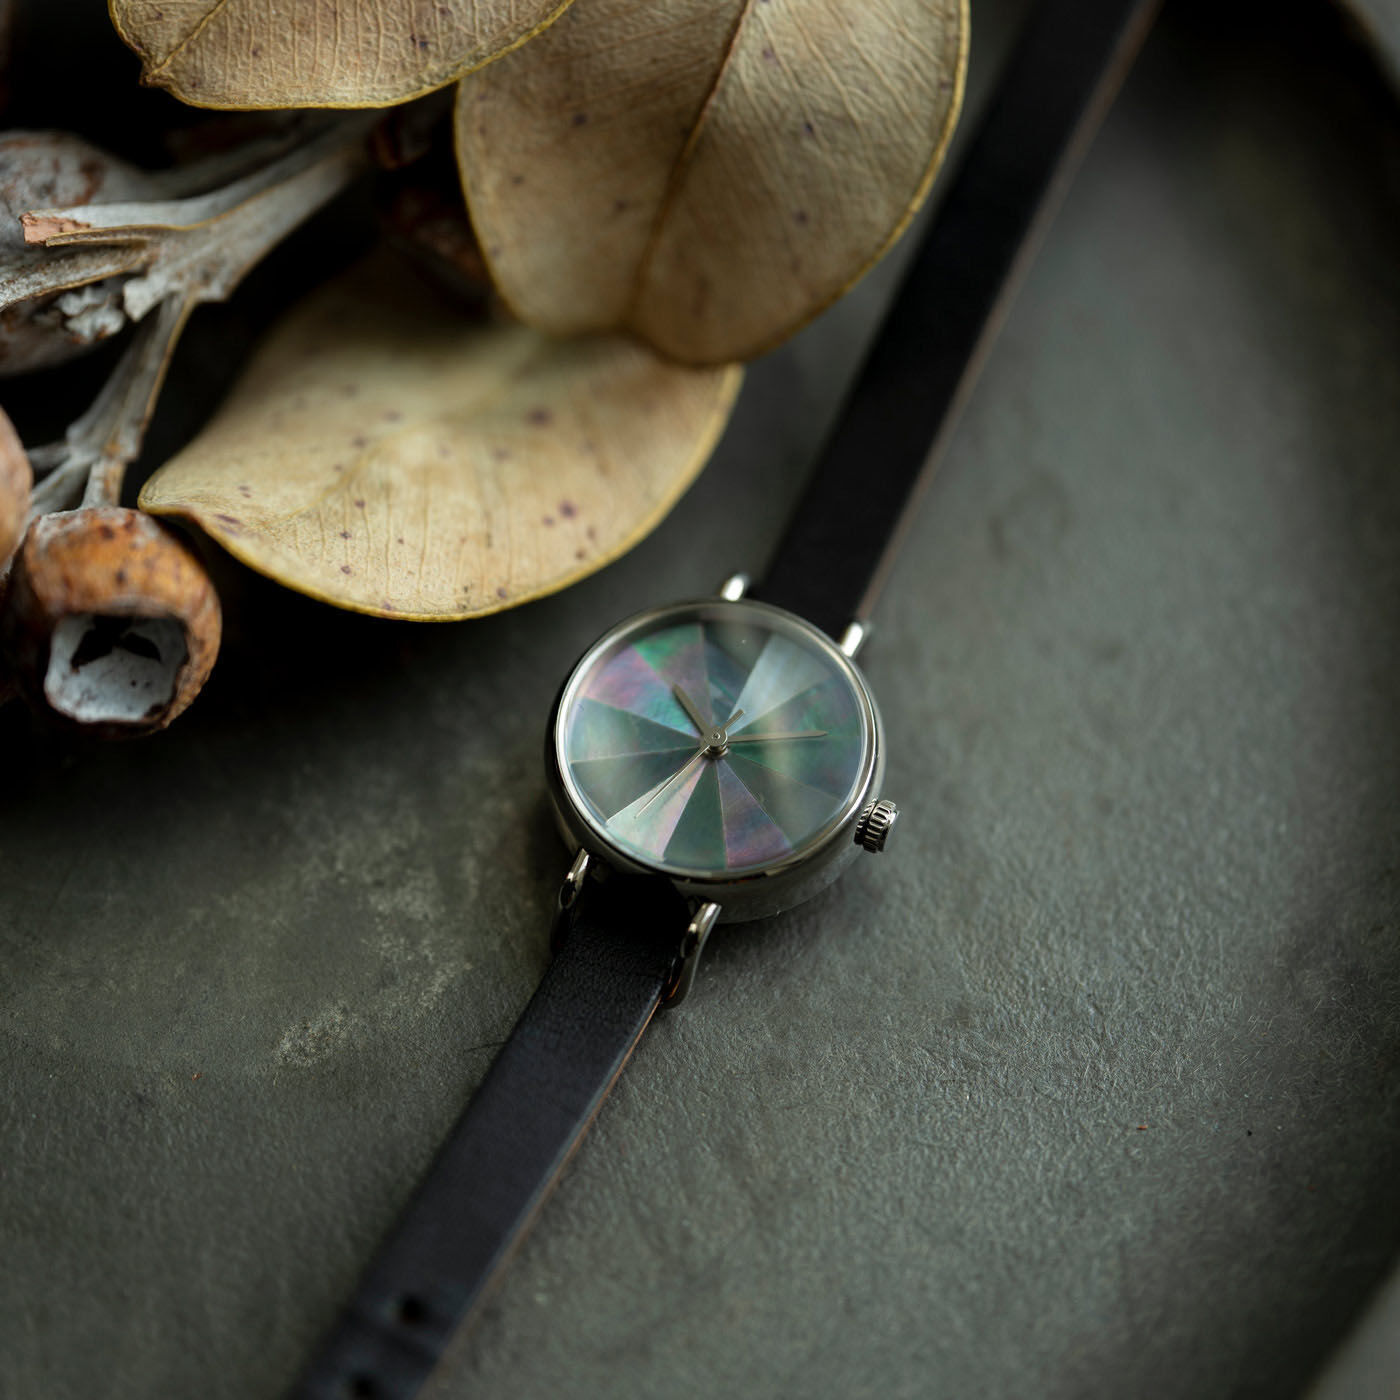 金沢の時計職人が手掛けた オーロラ色の輝きに見惚れる 黒蝶貝の腕時計